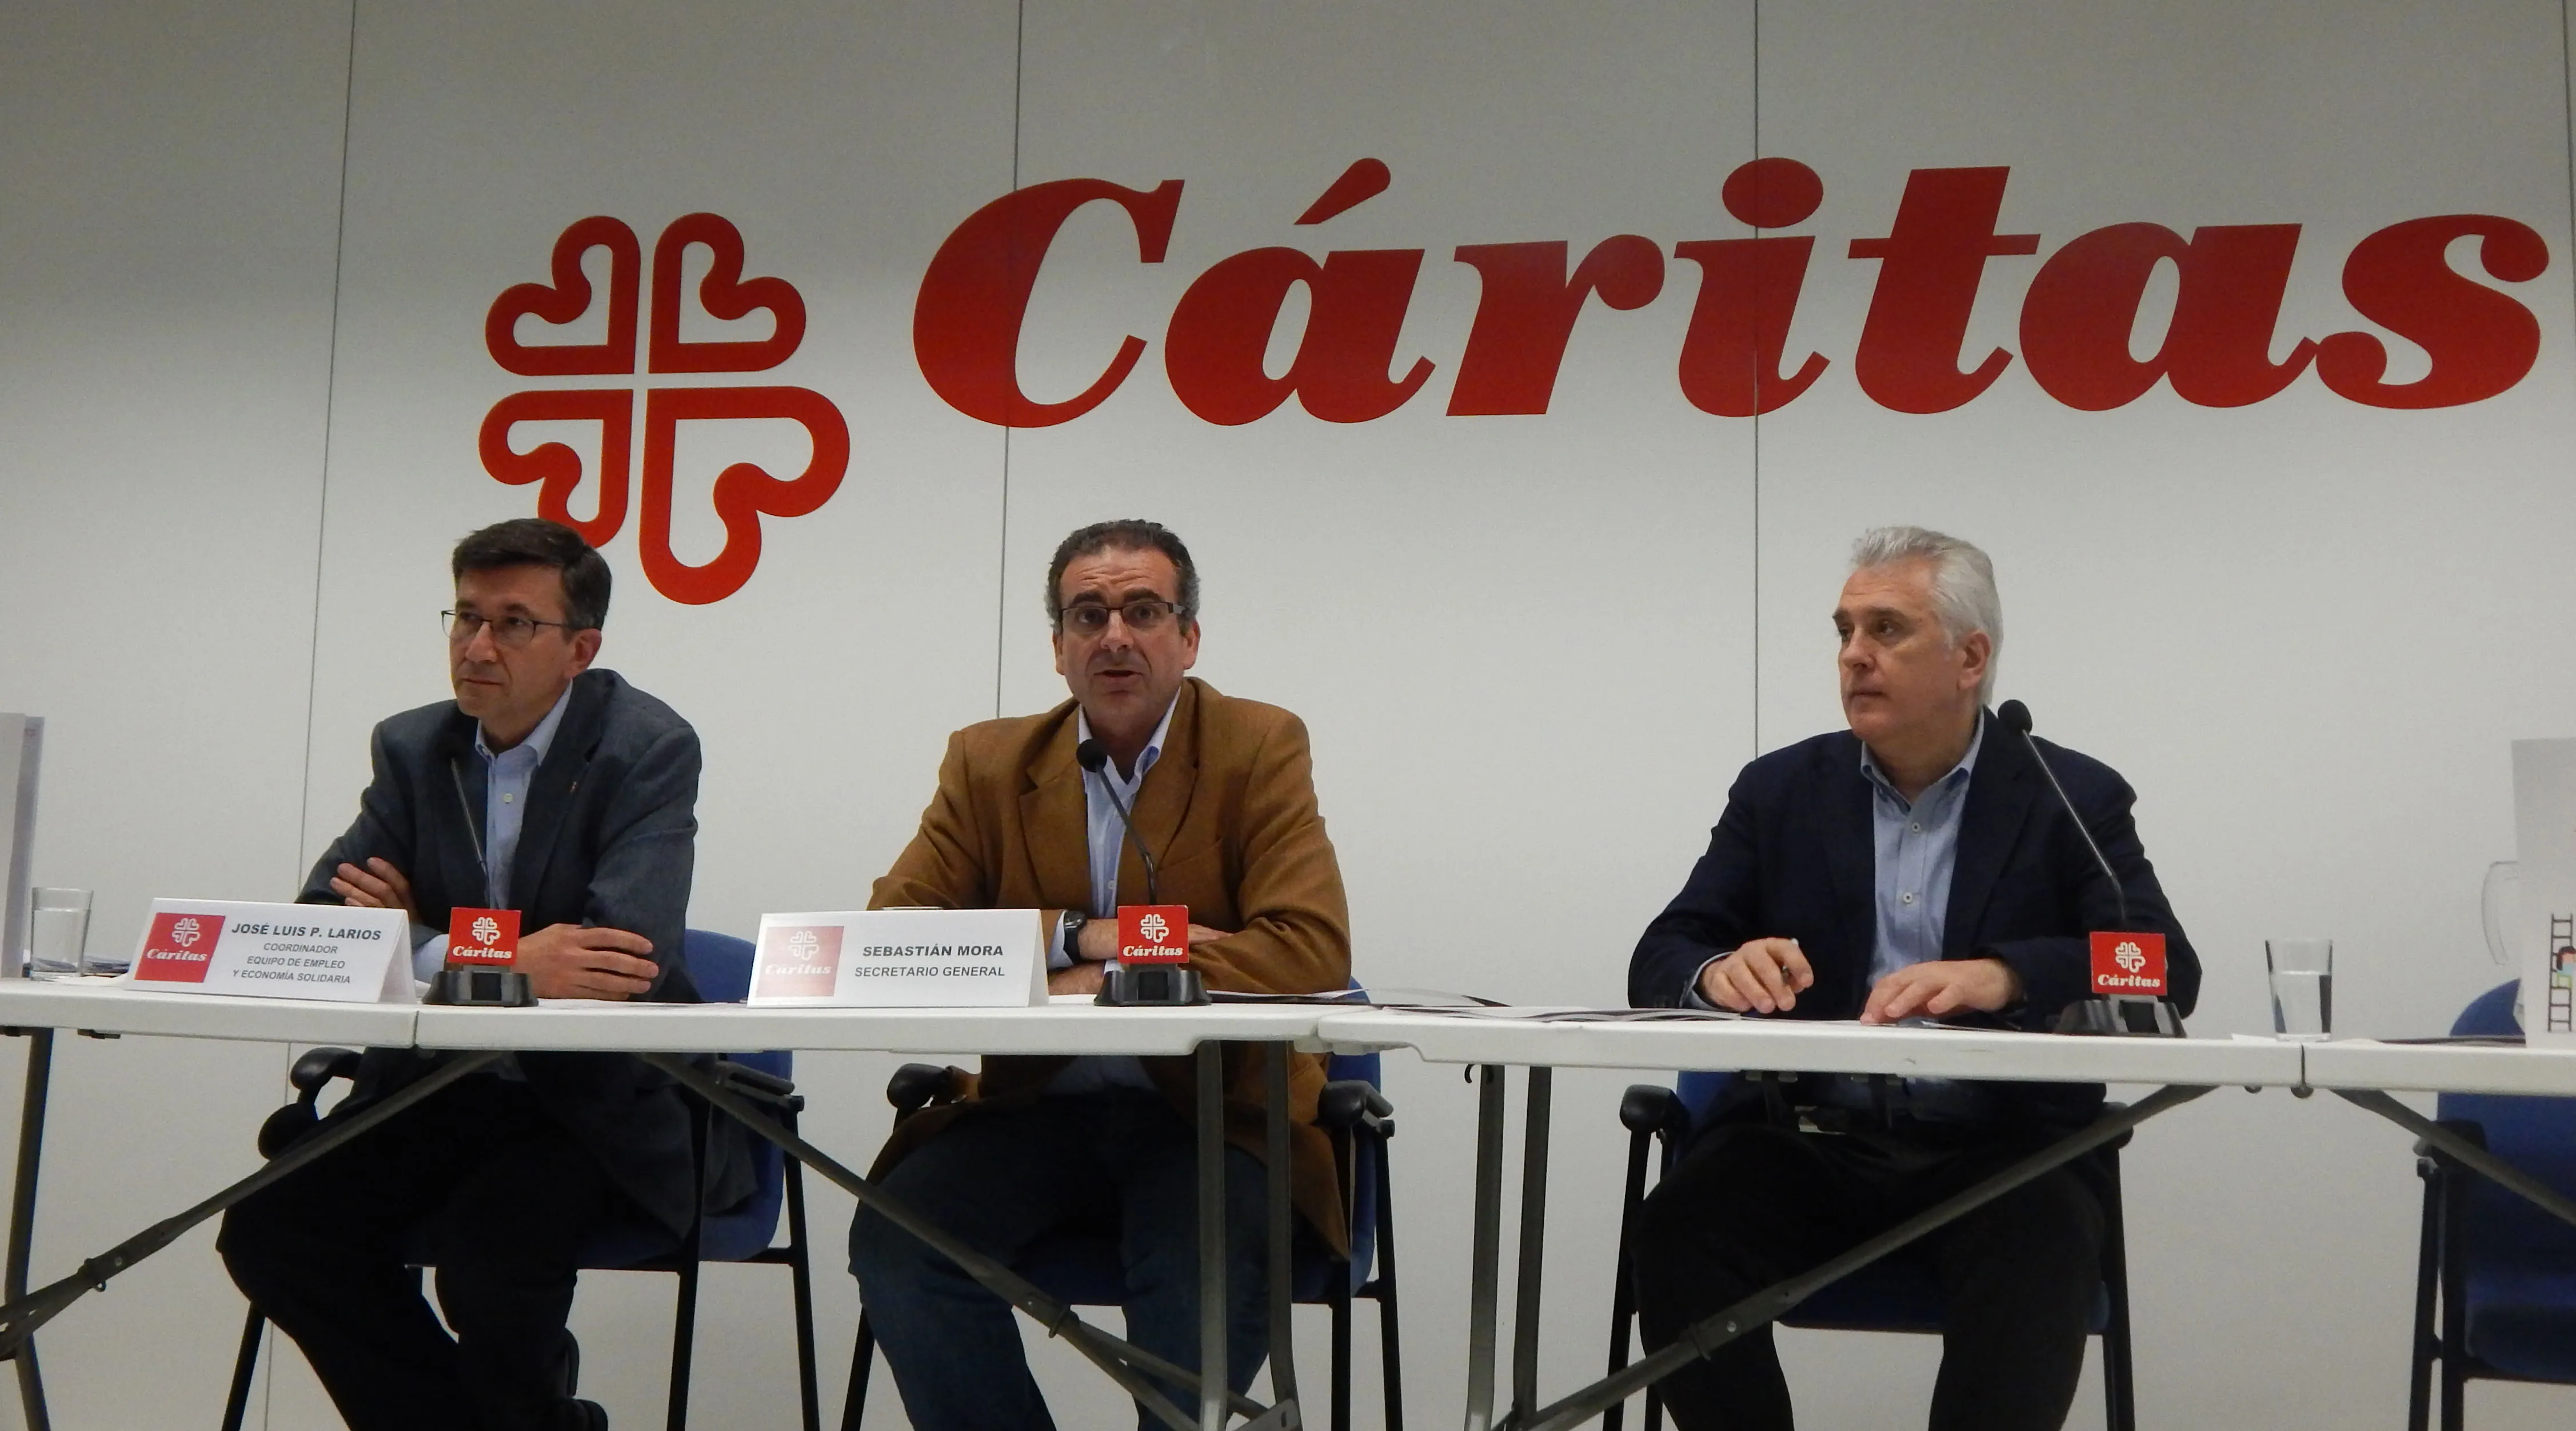 José Luis Pérez Larios (izq), Sebastián Mora (centro ) y Ángel Arriví (dcha) en la presentación del Informe de Empleo 2014 de Cáritas. Foto: ACI Prensa. ?w=200&h=150